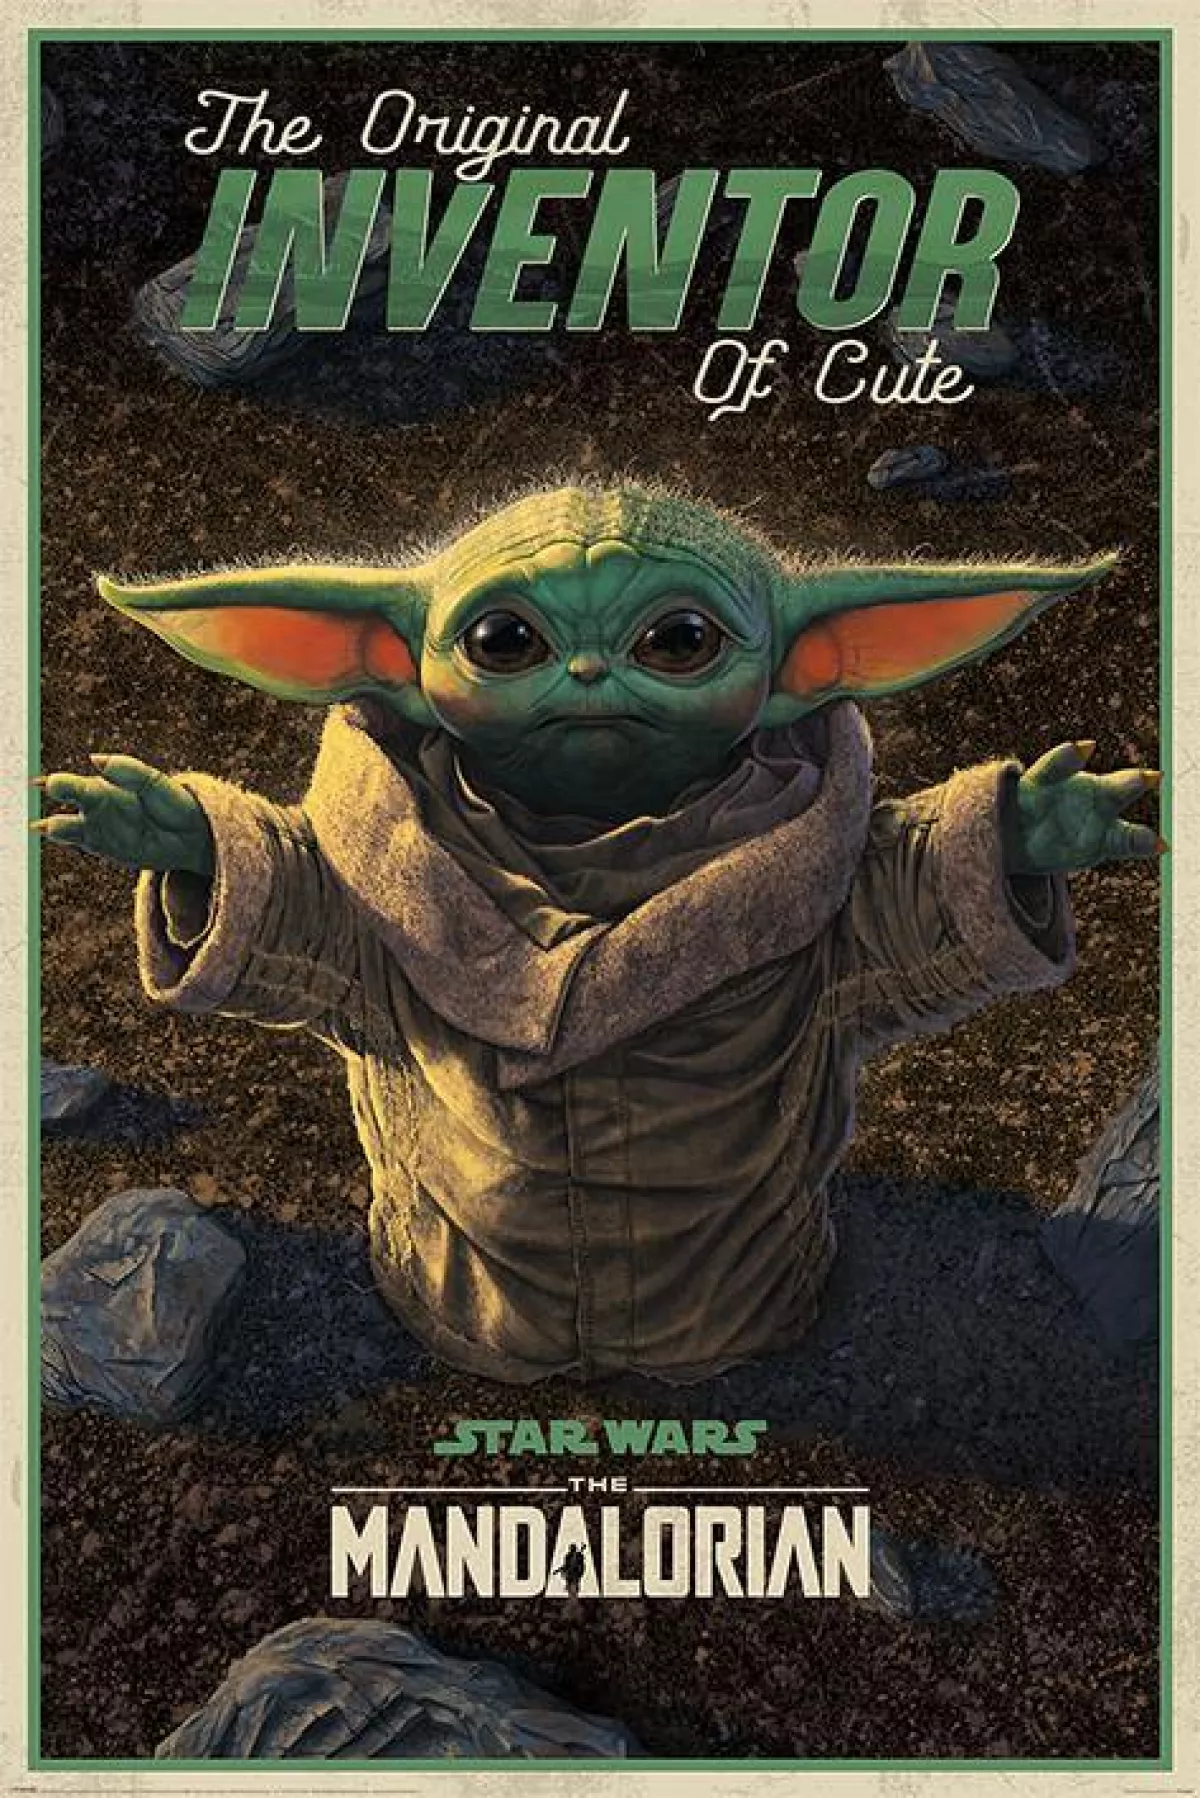 #1 - The mandalorian star wars Cute yoda plakat